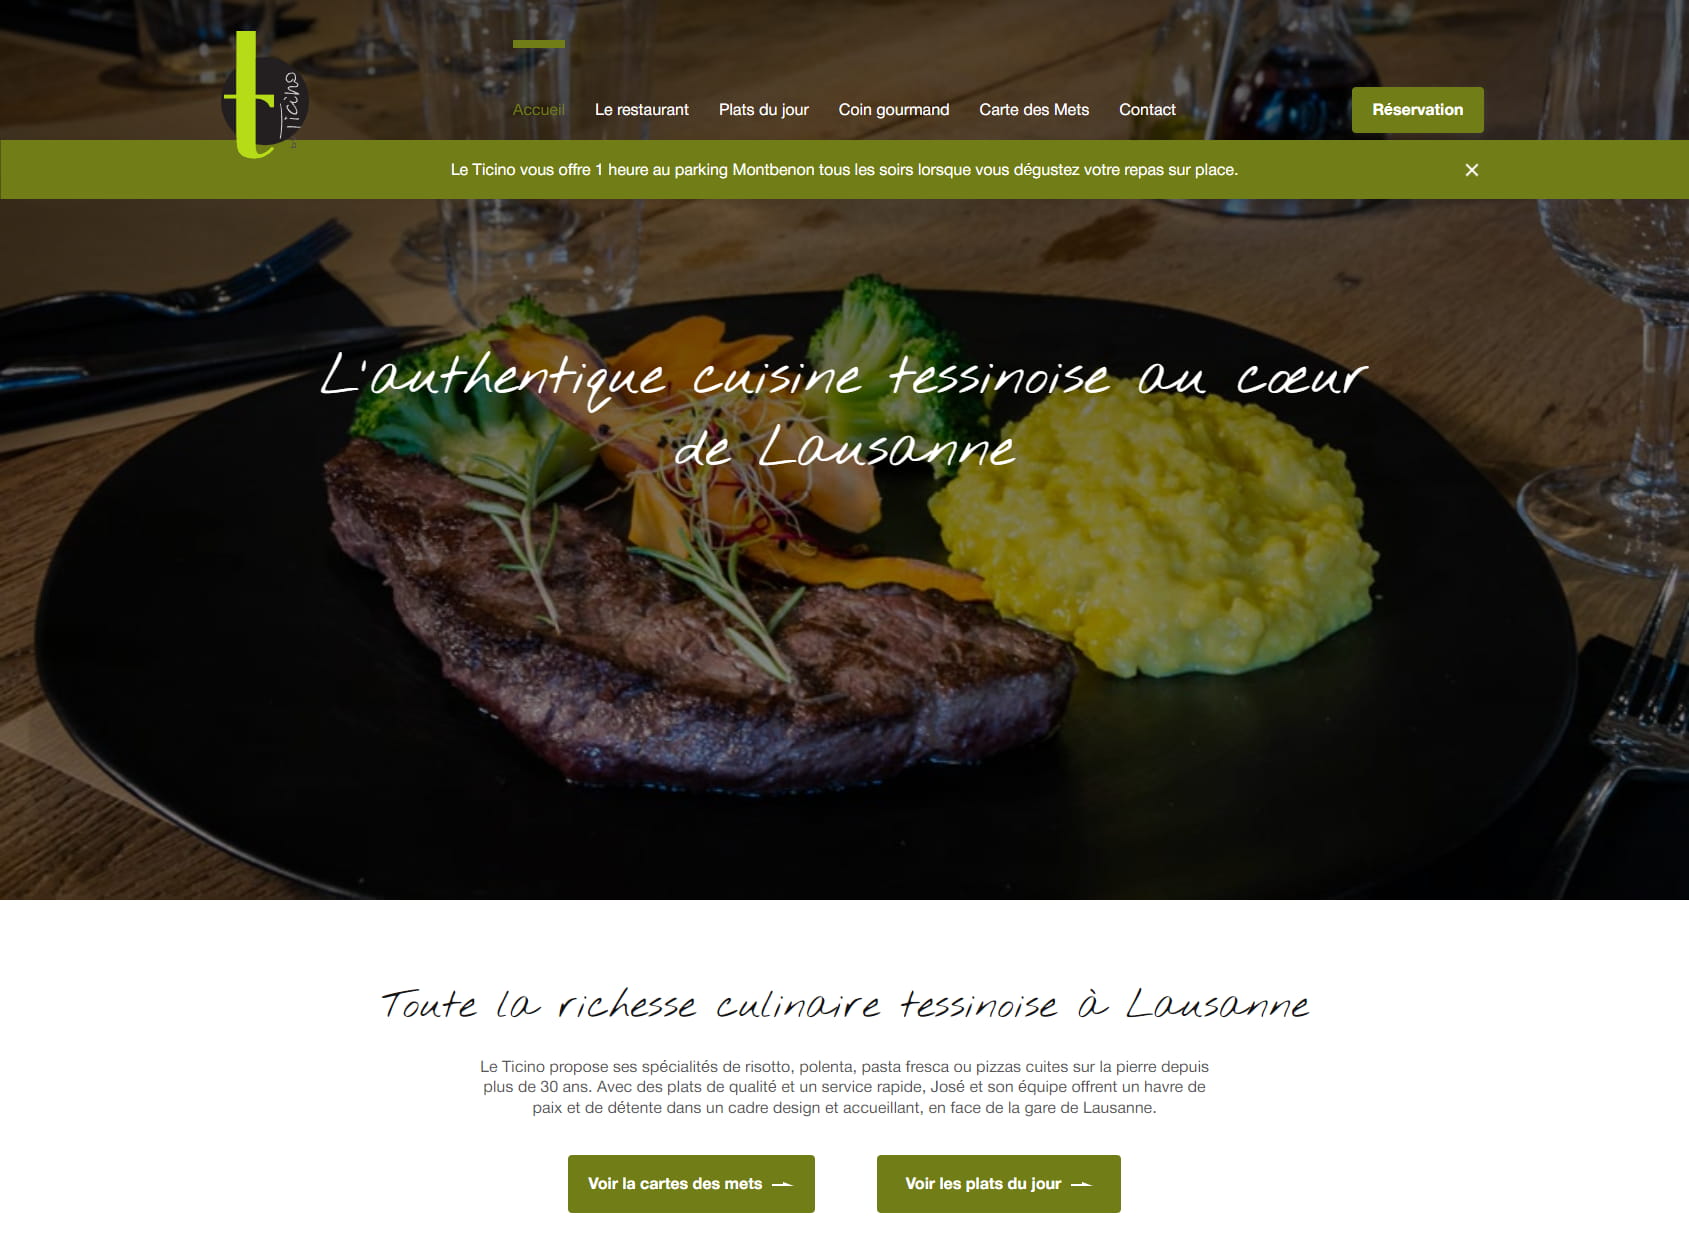 Le Ticino - Restaurant Lausanne